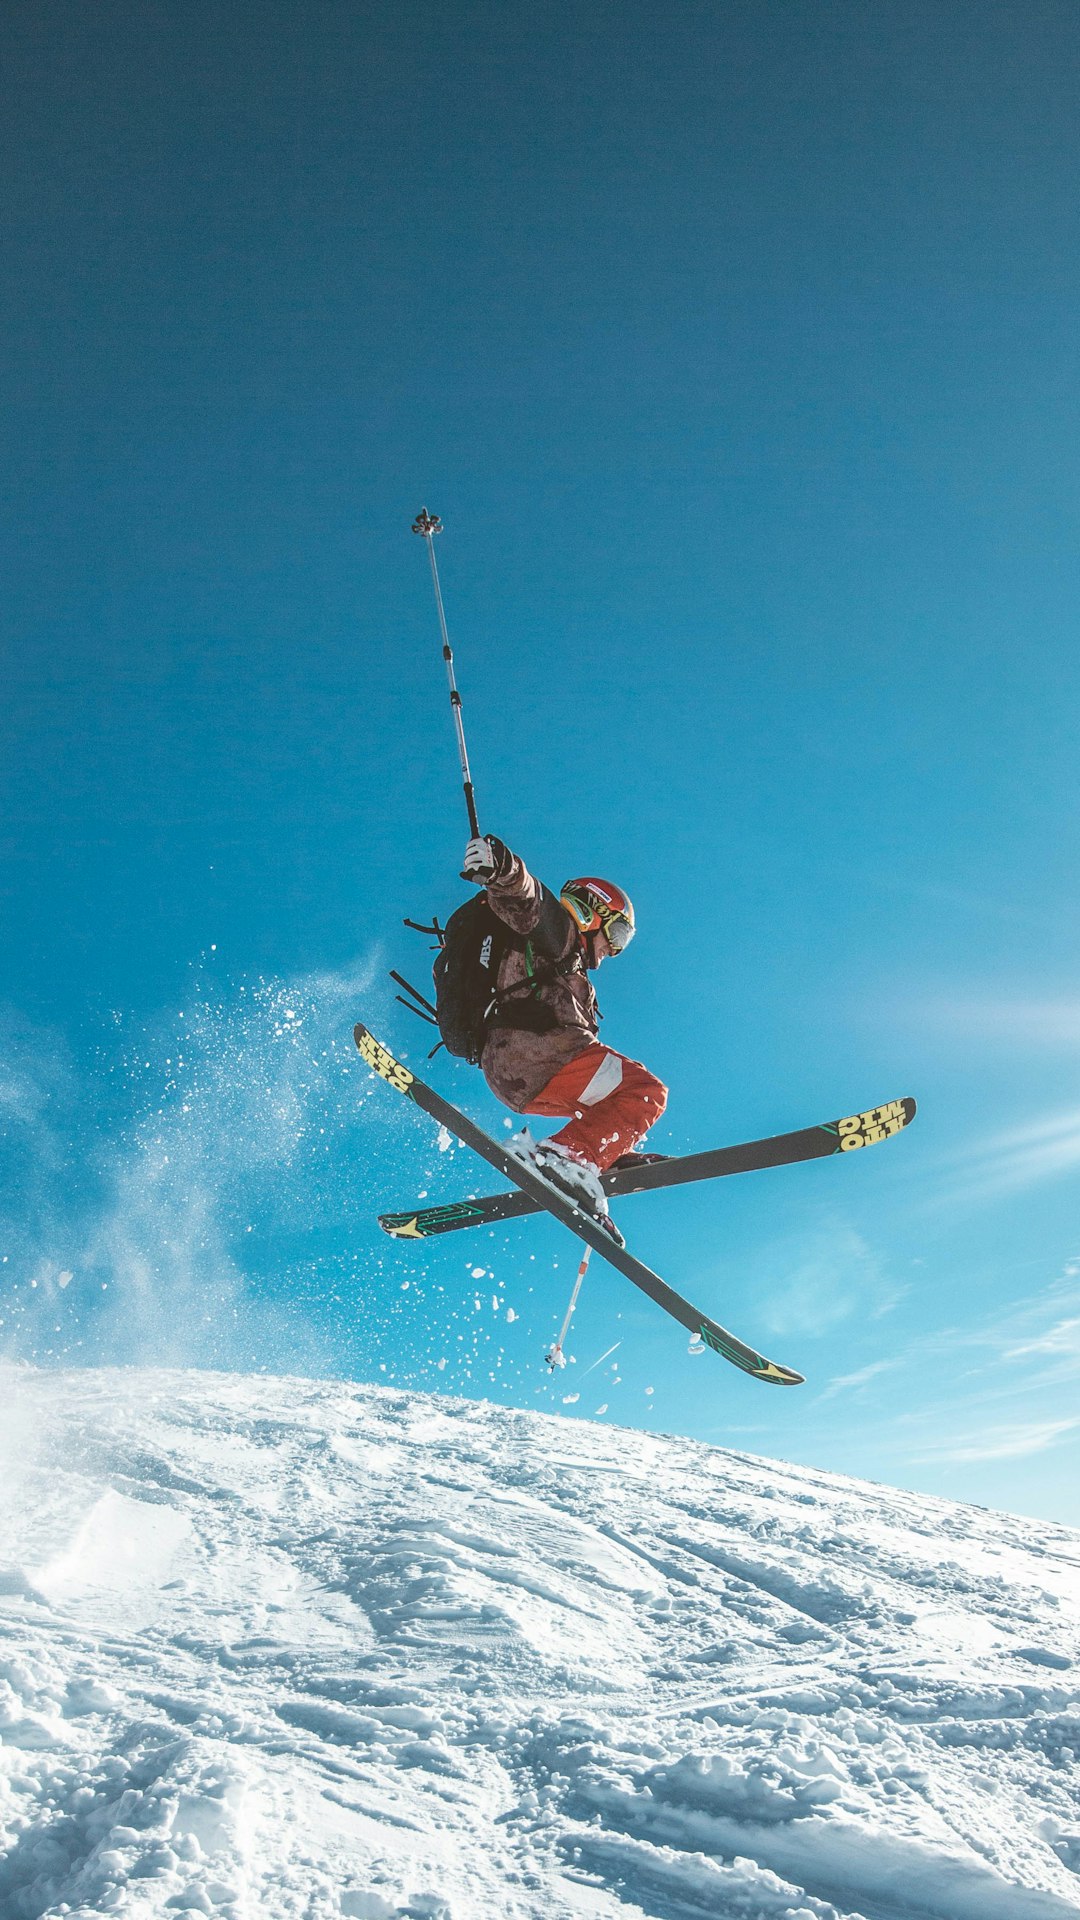 Skier photo spot La Rosière Les Contamines-Montjoie